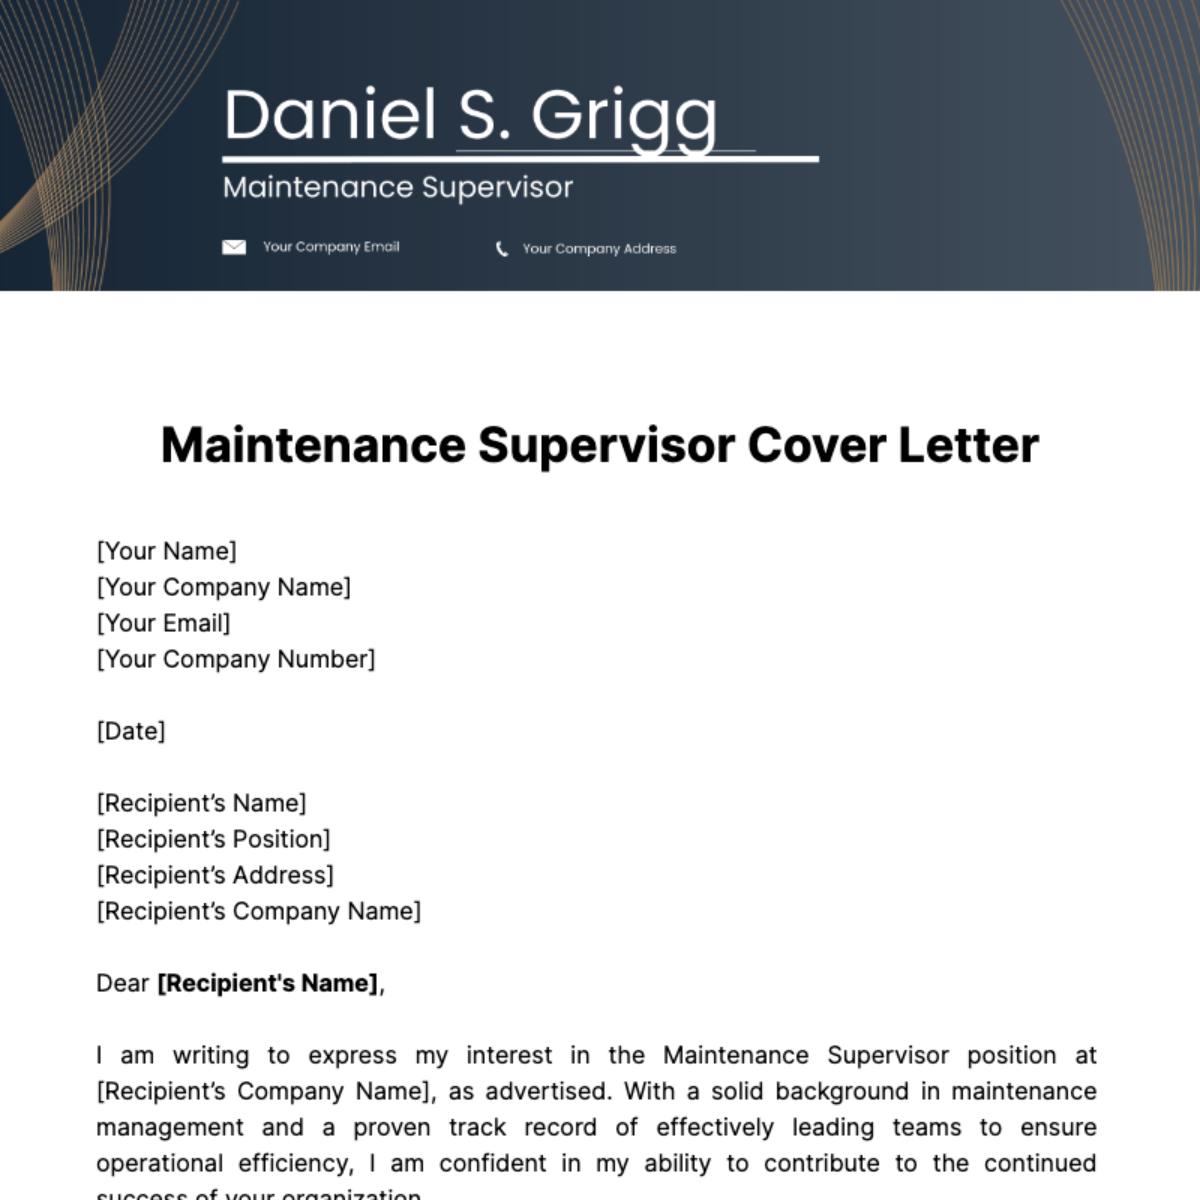 Maintenance Supervisor Cover Letter Template